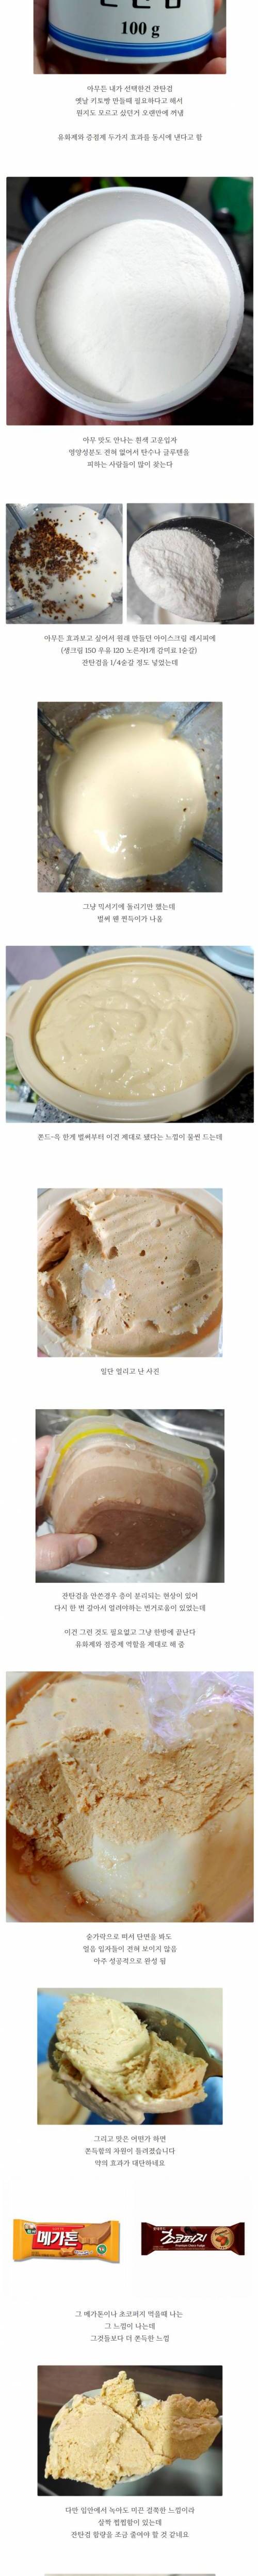 [스압] 아이스크림 식품 첨가물 잔탄검 사용후기.jpg